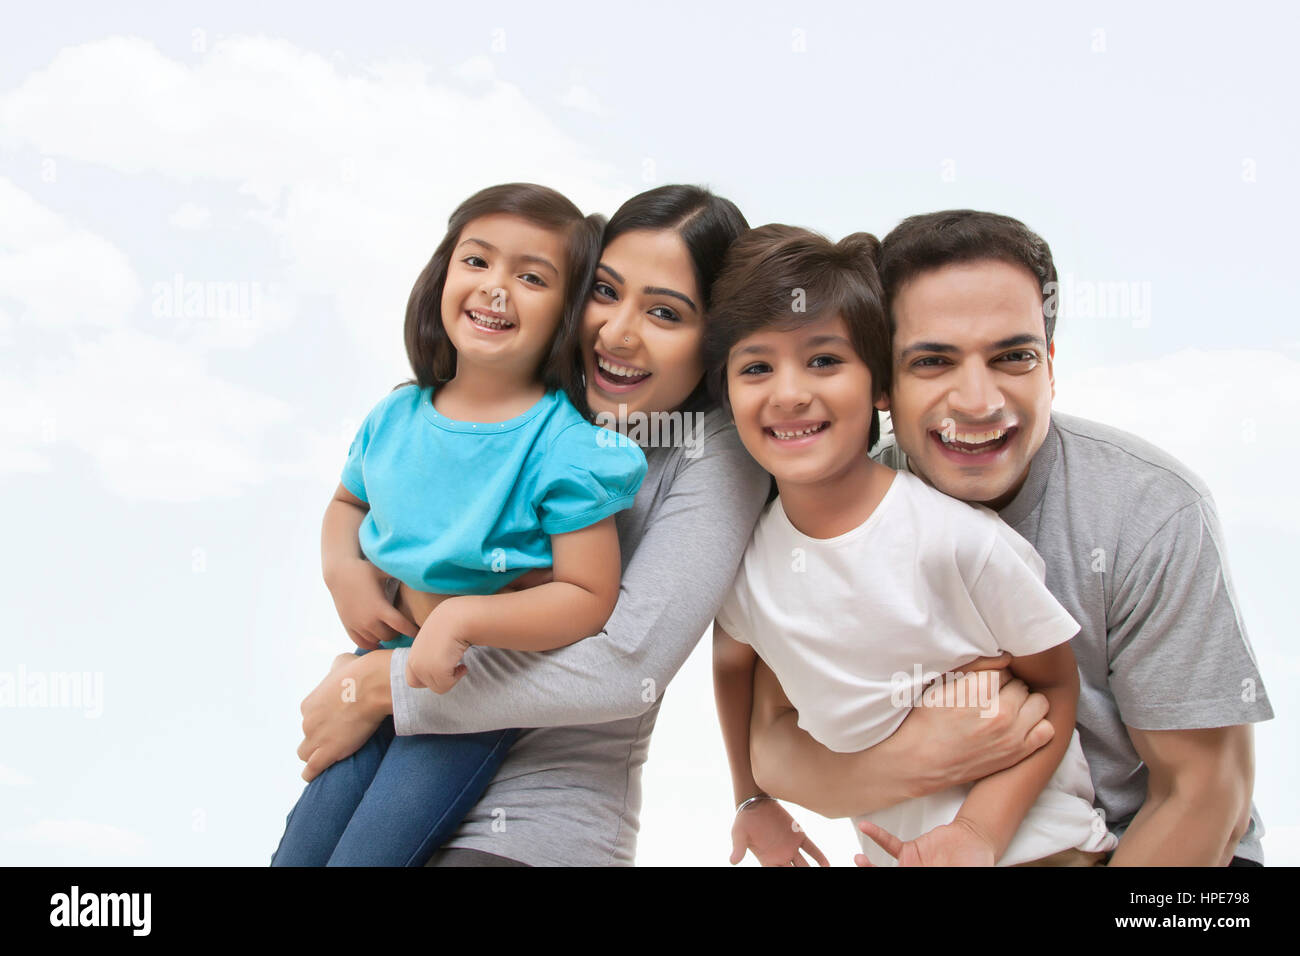 Retrato de felices padres jóvenes y dos niños Foto de stock